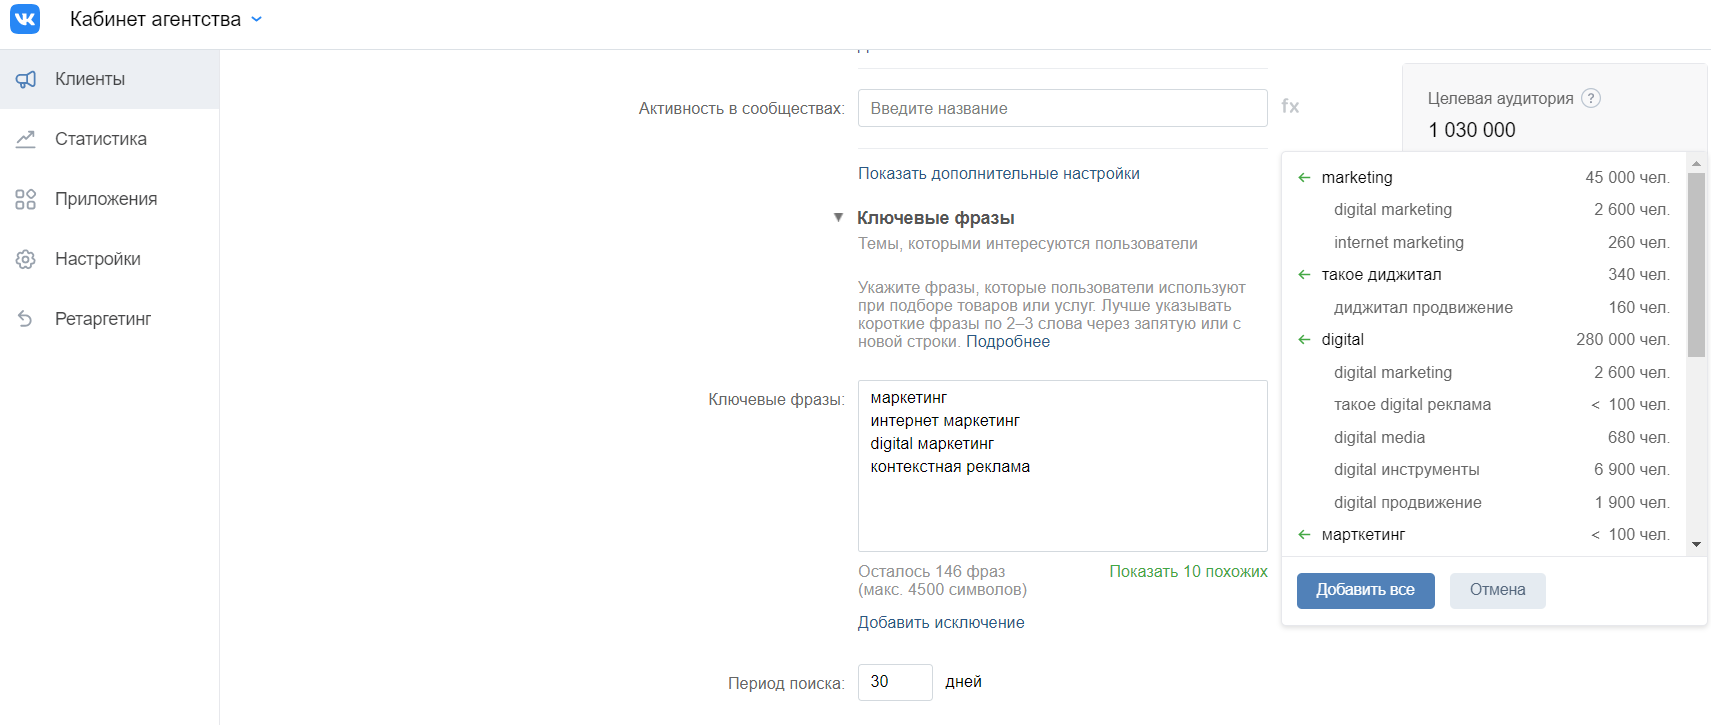 Как работает контекстный таргетинг во «ВКонтакте»: рекомендации по настройке и кейсы | iProWeb